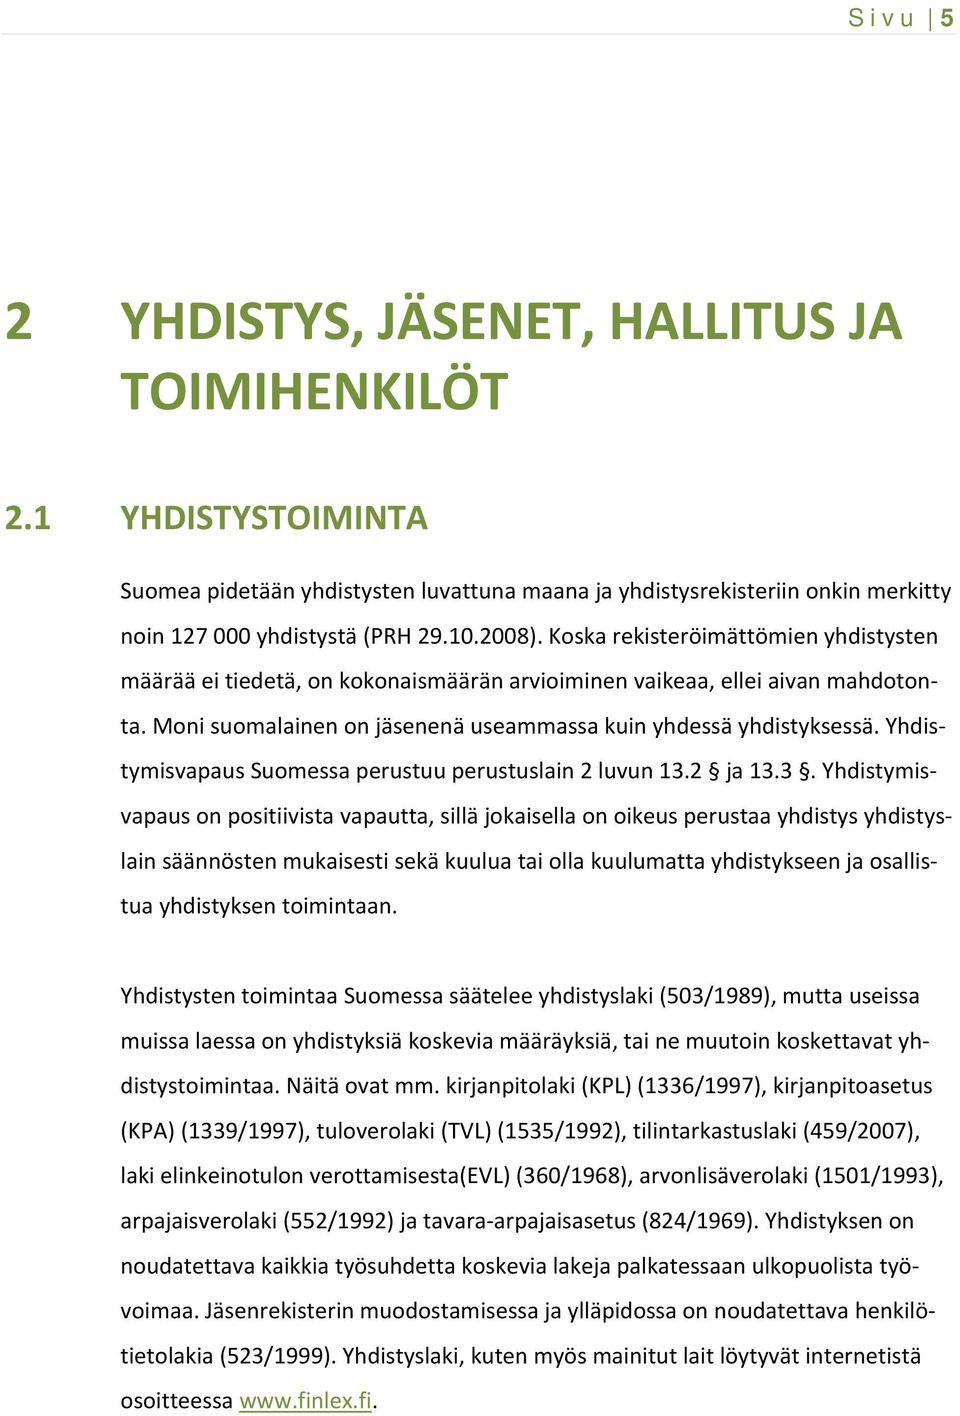 Yhdistymisvapaus Suomessa perustuu perustuslain 2 luvun 13.